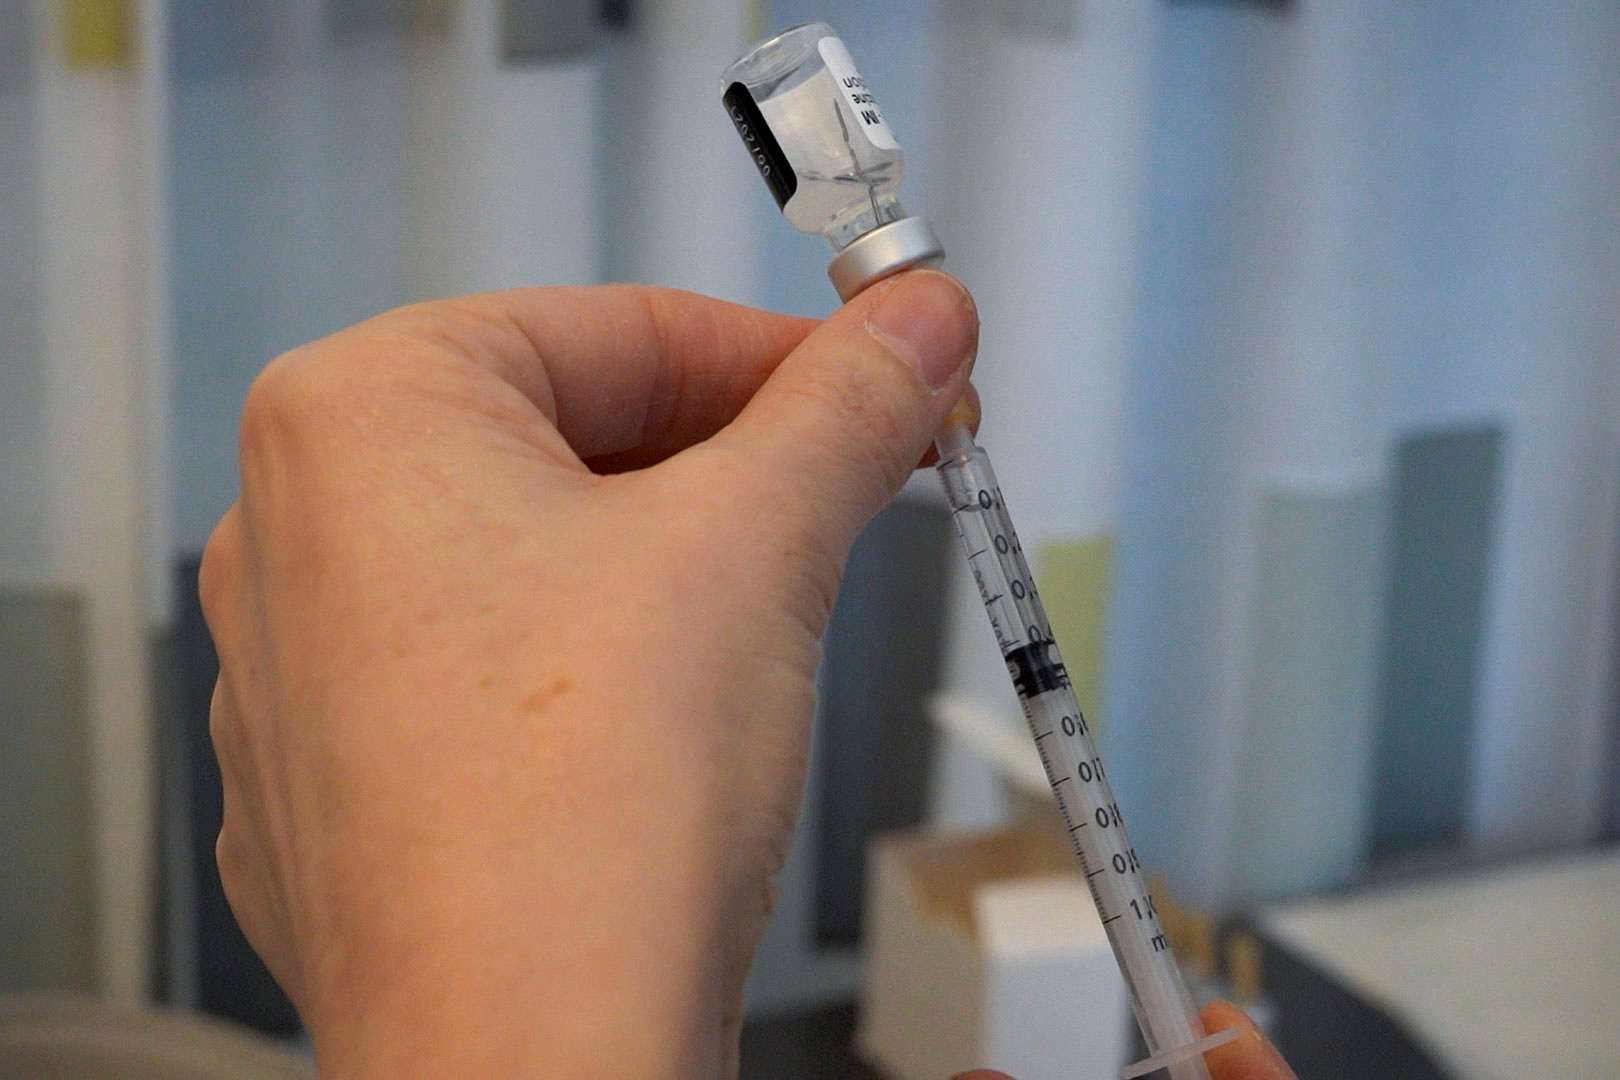 Nurse Roos prepares a dose of vaccine against coronavirus disease (COVID-19) in Helsinki